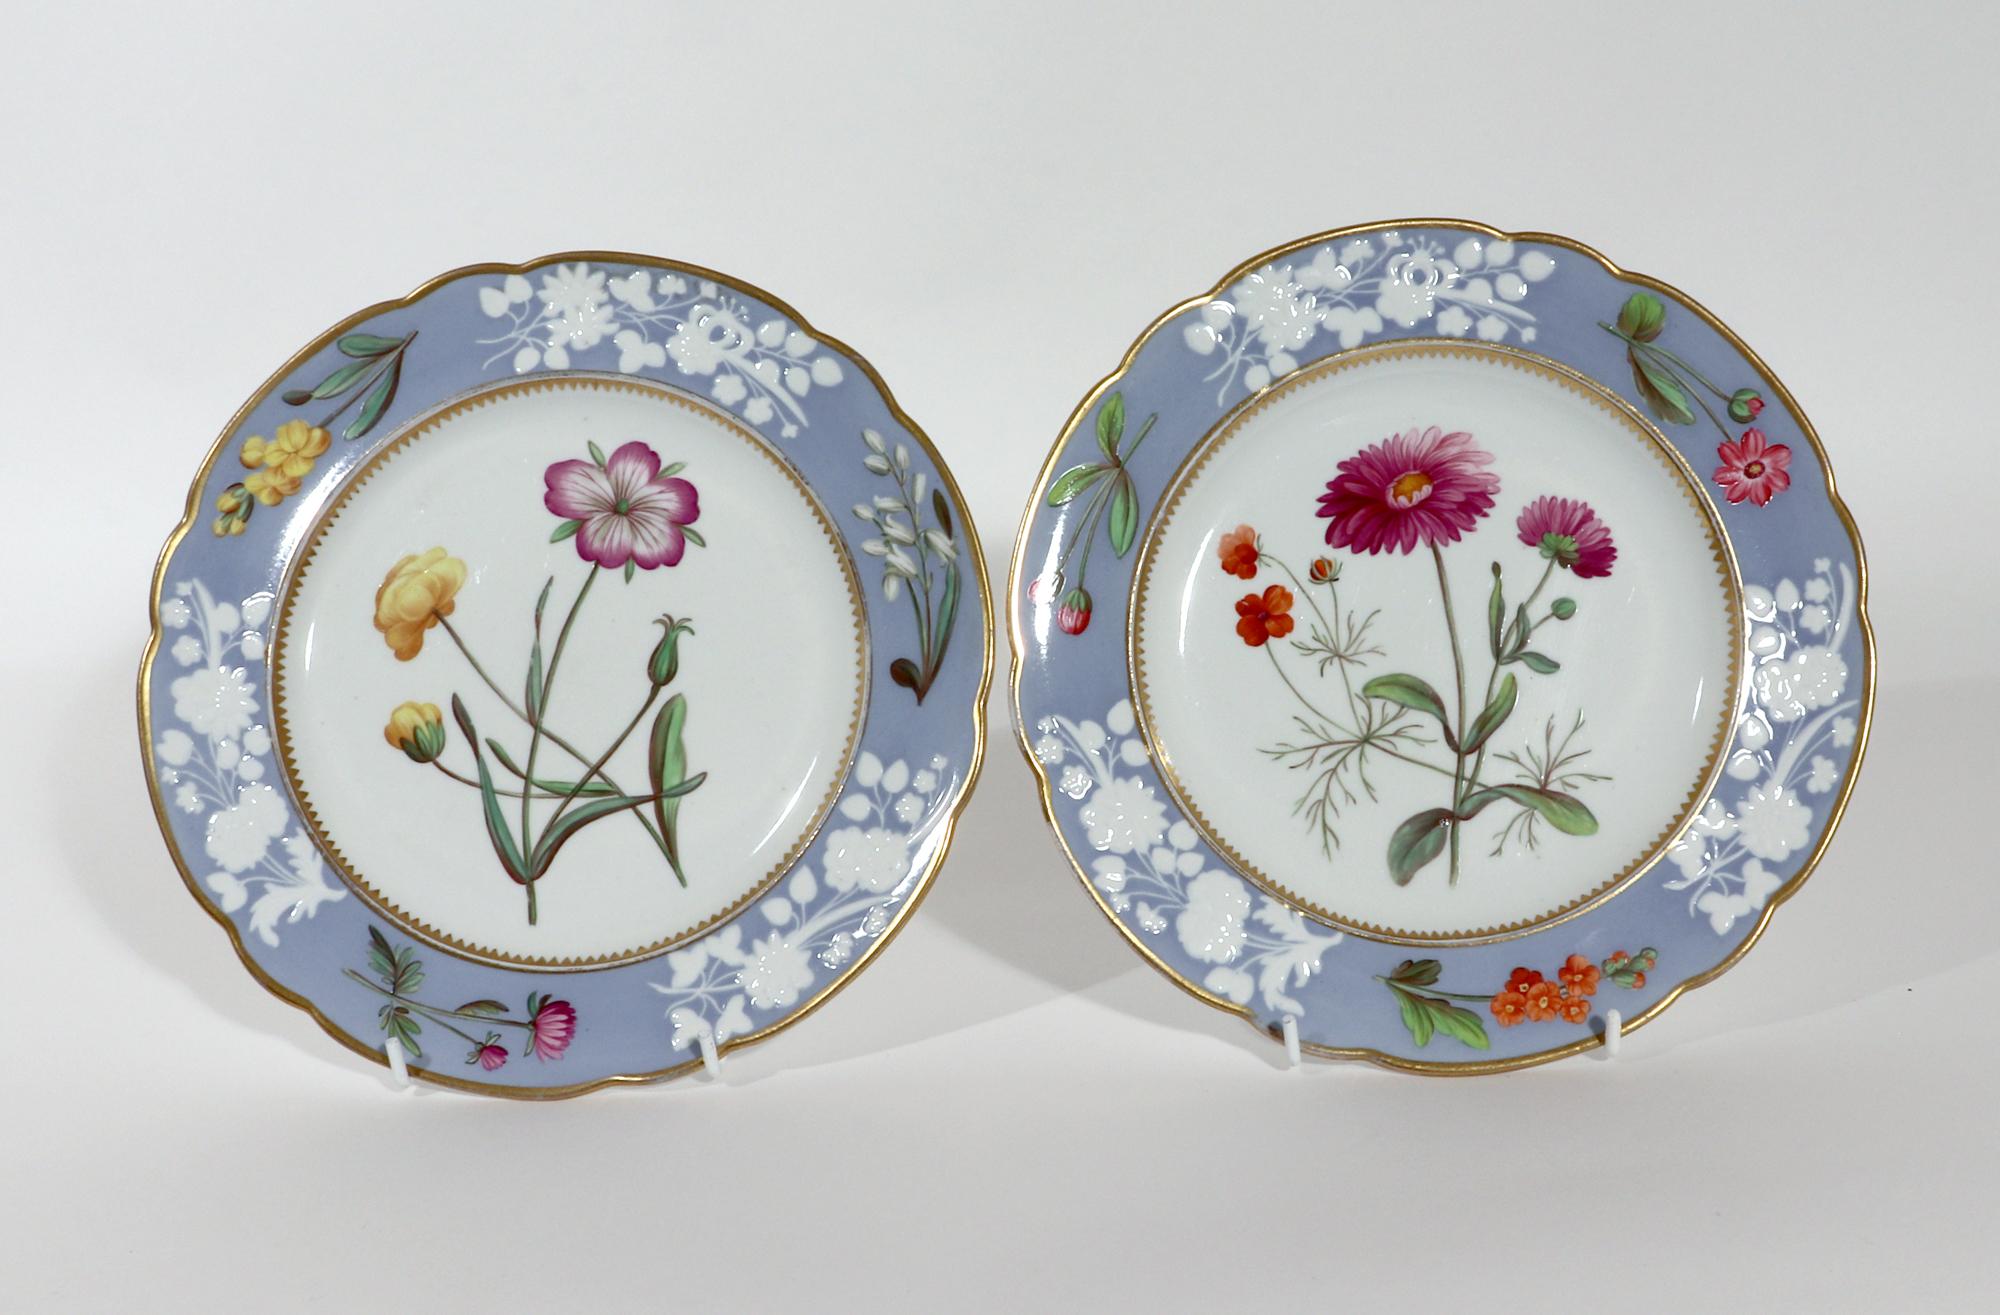 English Regency Spode Porcelain Seventeen Piece Dessert Service, Pattern # 2329